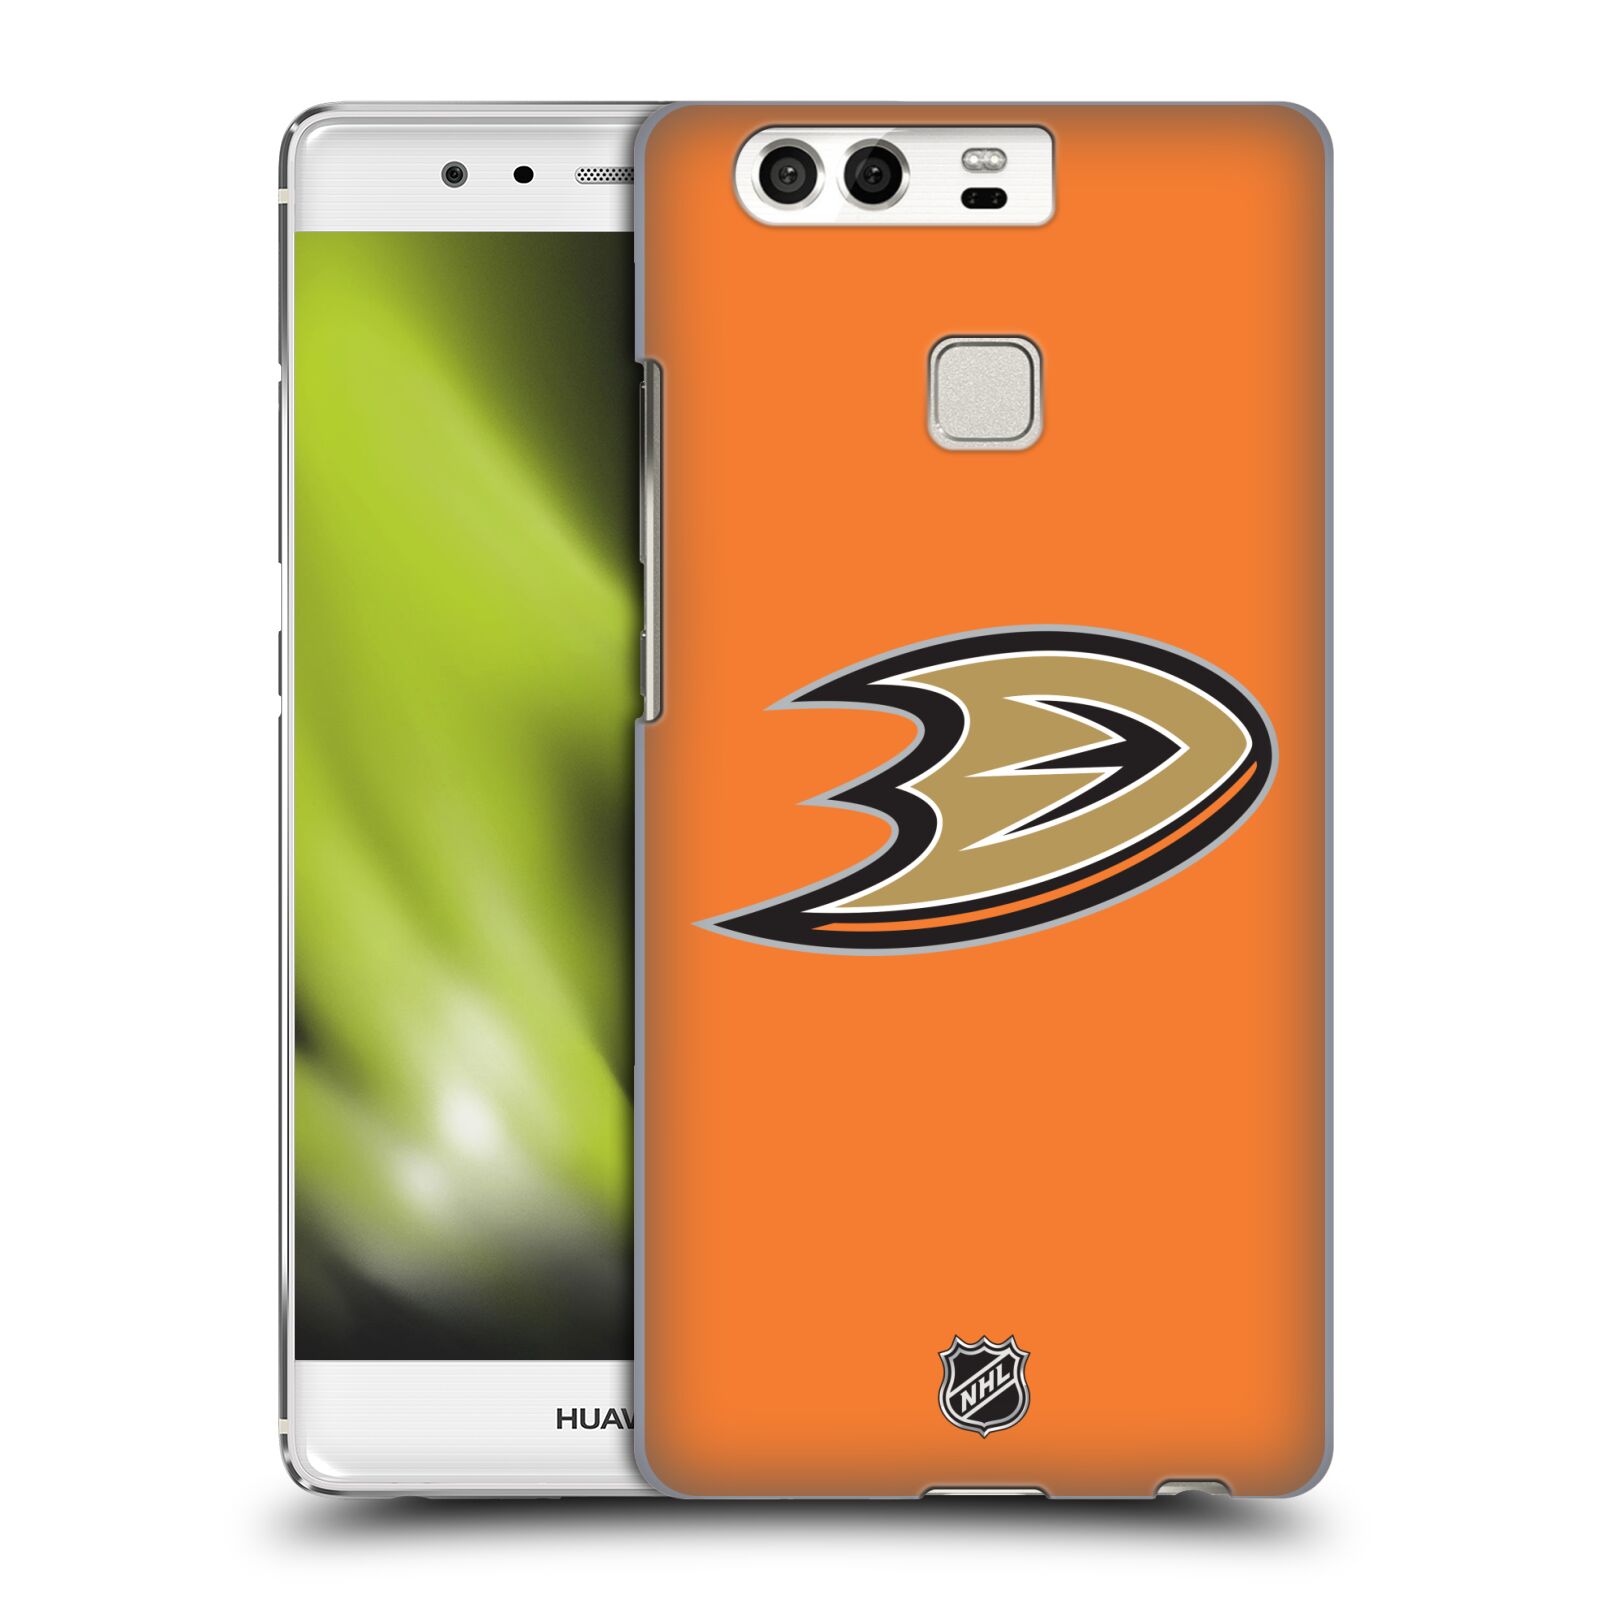 Pouzdro na mobil Huawei P9 / P9 DUAL SIM - HEAD CASE - Hokej NHL - Anaheim Ducks - Oranžové pozadí